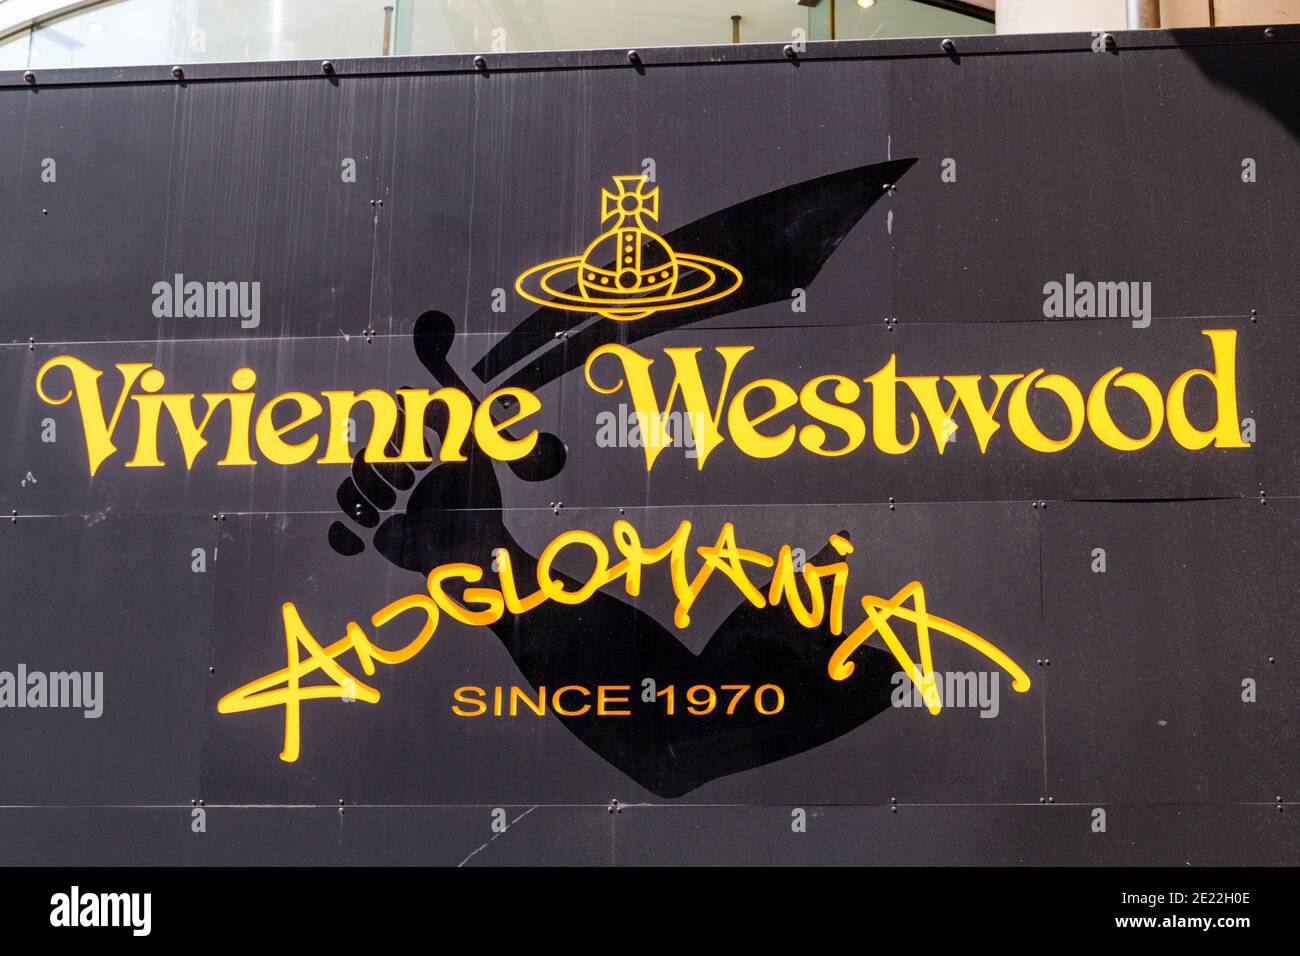 Primo piano del logo sopra il negozio del logo Vivienne Westwood Anglomania sul suo negozio di punta a Harujuku. Tokyo. Lettere gialle su nero. Foto Stock